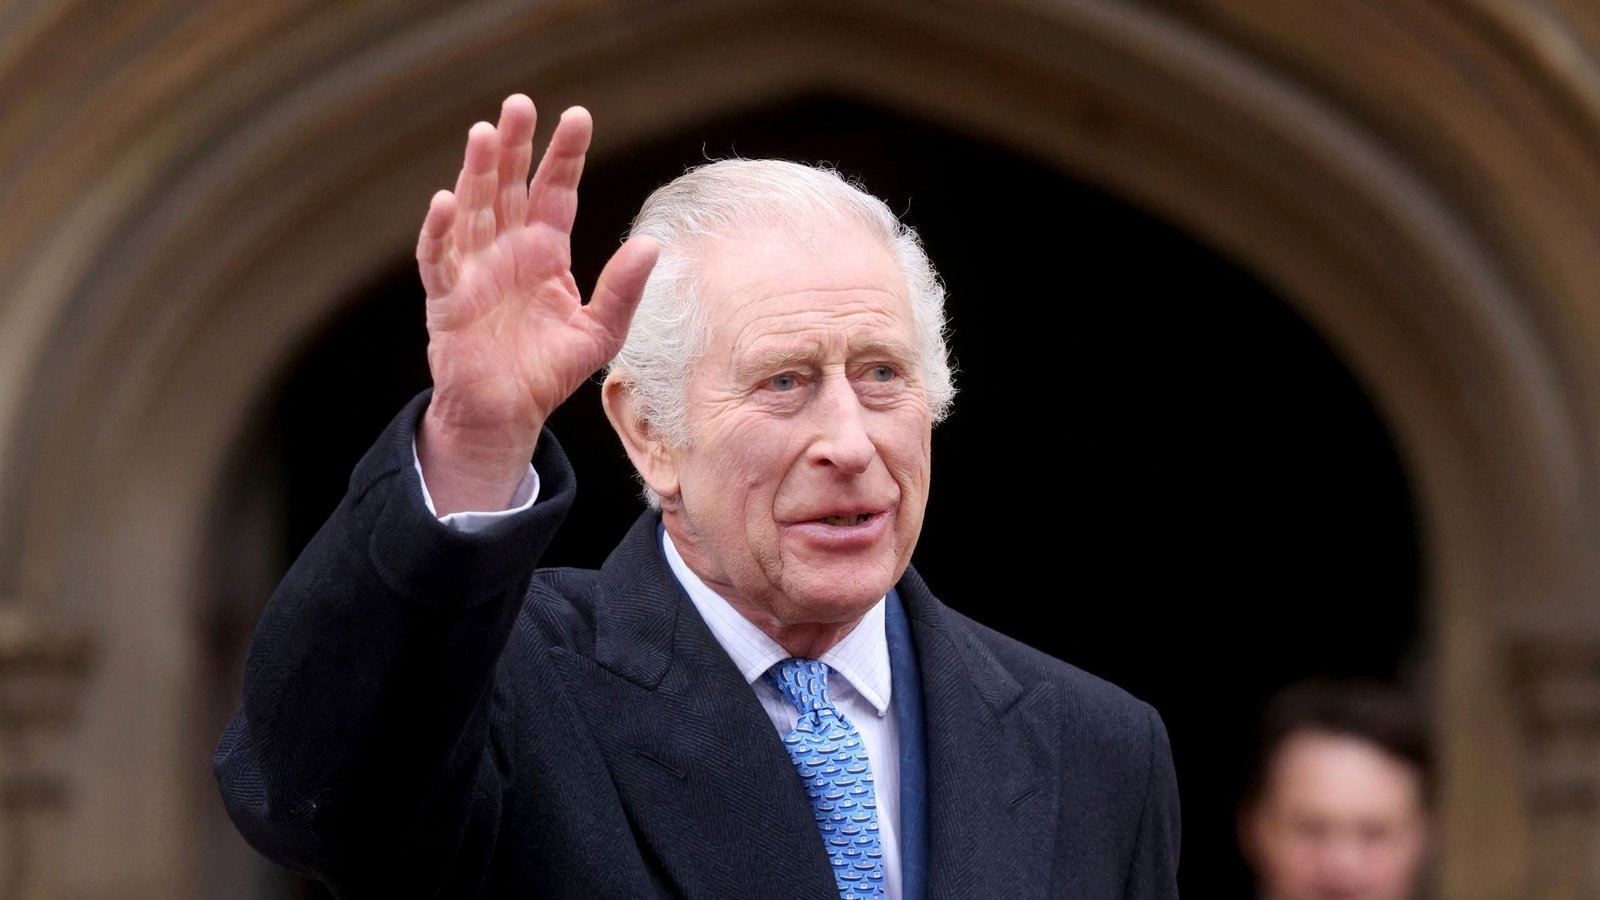 Nach Bekanntmachung seiner Krebsdiagnose will Großbritanniens König Charles III. wieder öffentliche Termine wahrnehmen.Foto: Hollie Adams/Reuters Pool/AP/dpa